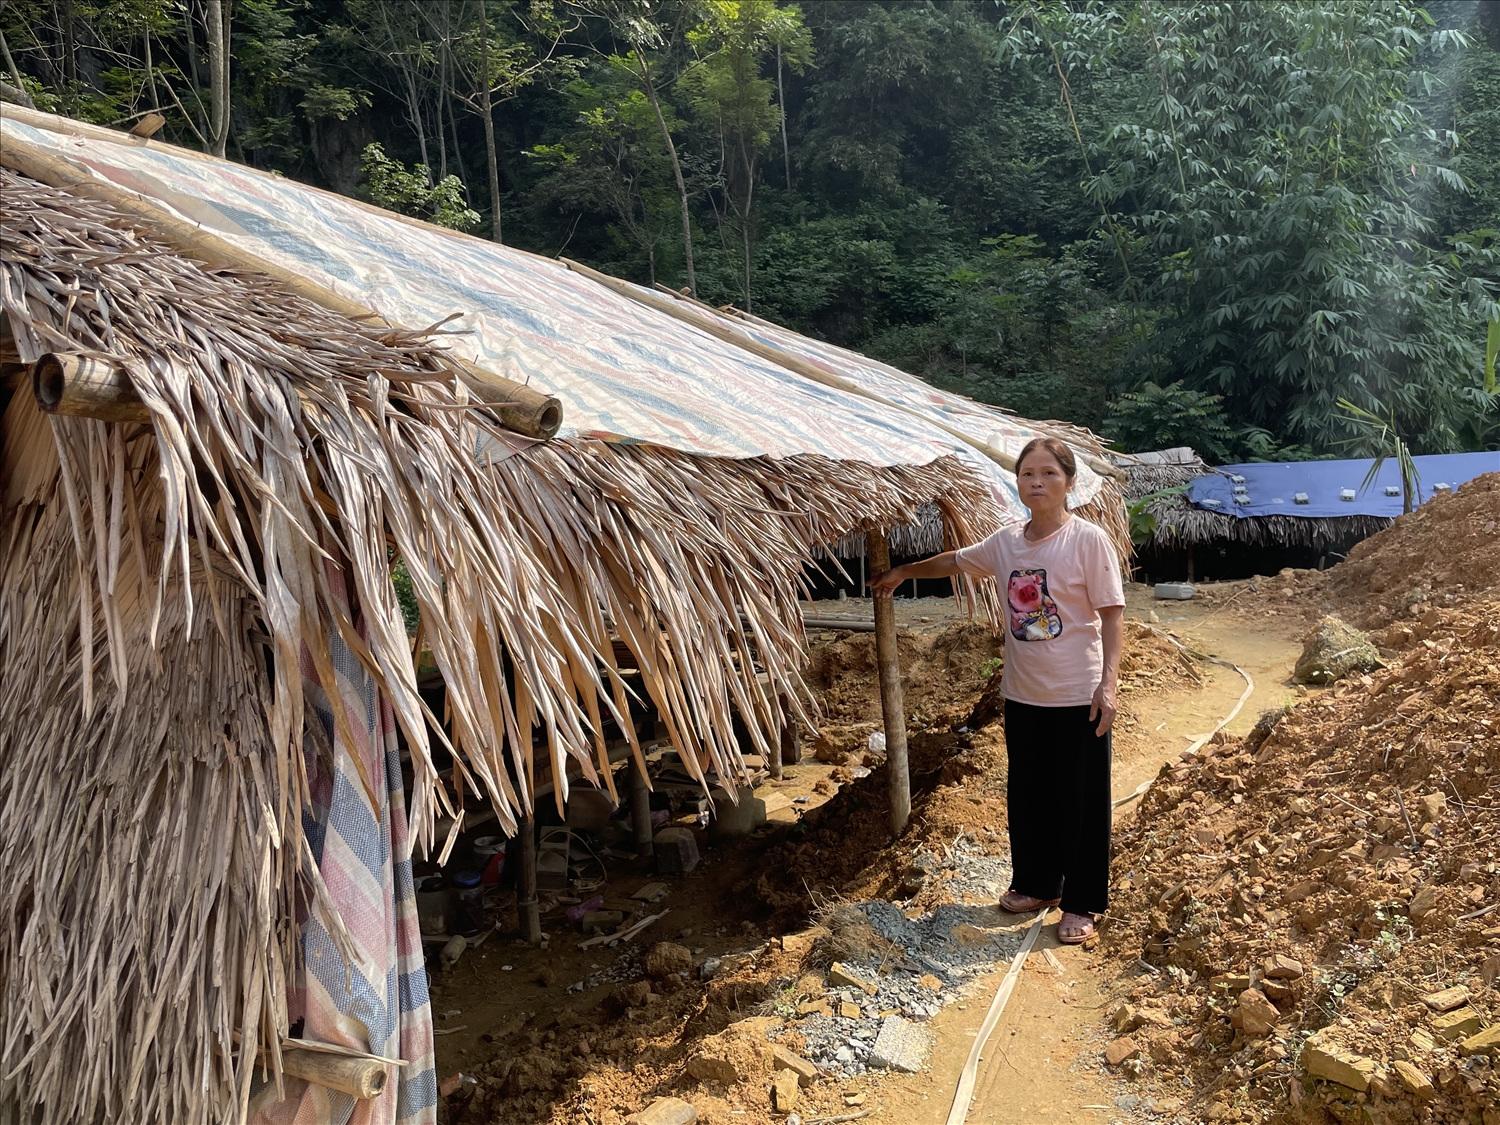 Bà Phạm Thị Dinh, thôn Cú, huyện Bá Thước cho biết phải dựng lều để tránh ngập nước khi trời mưa